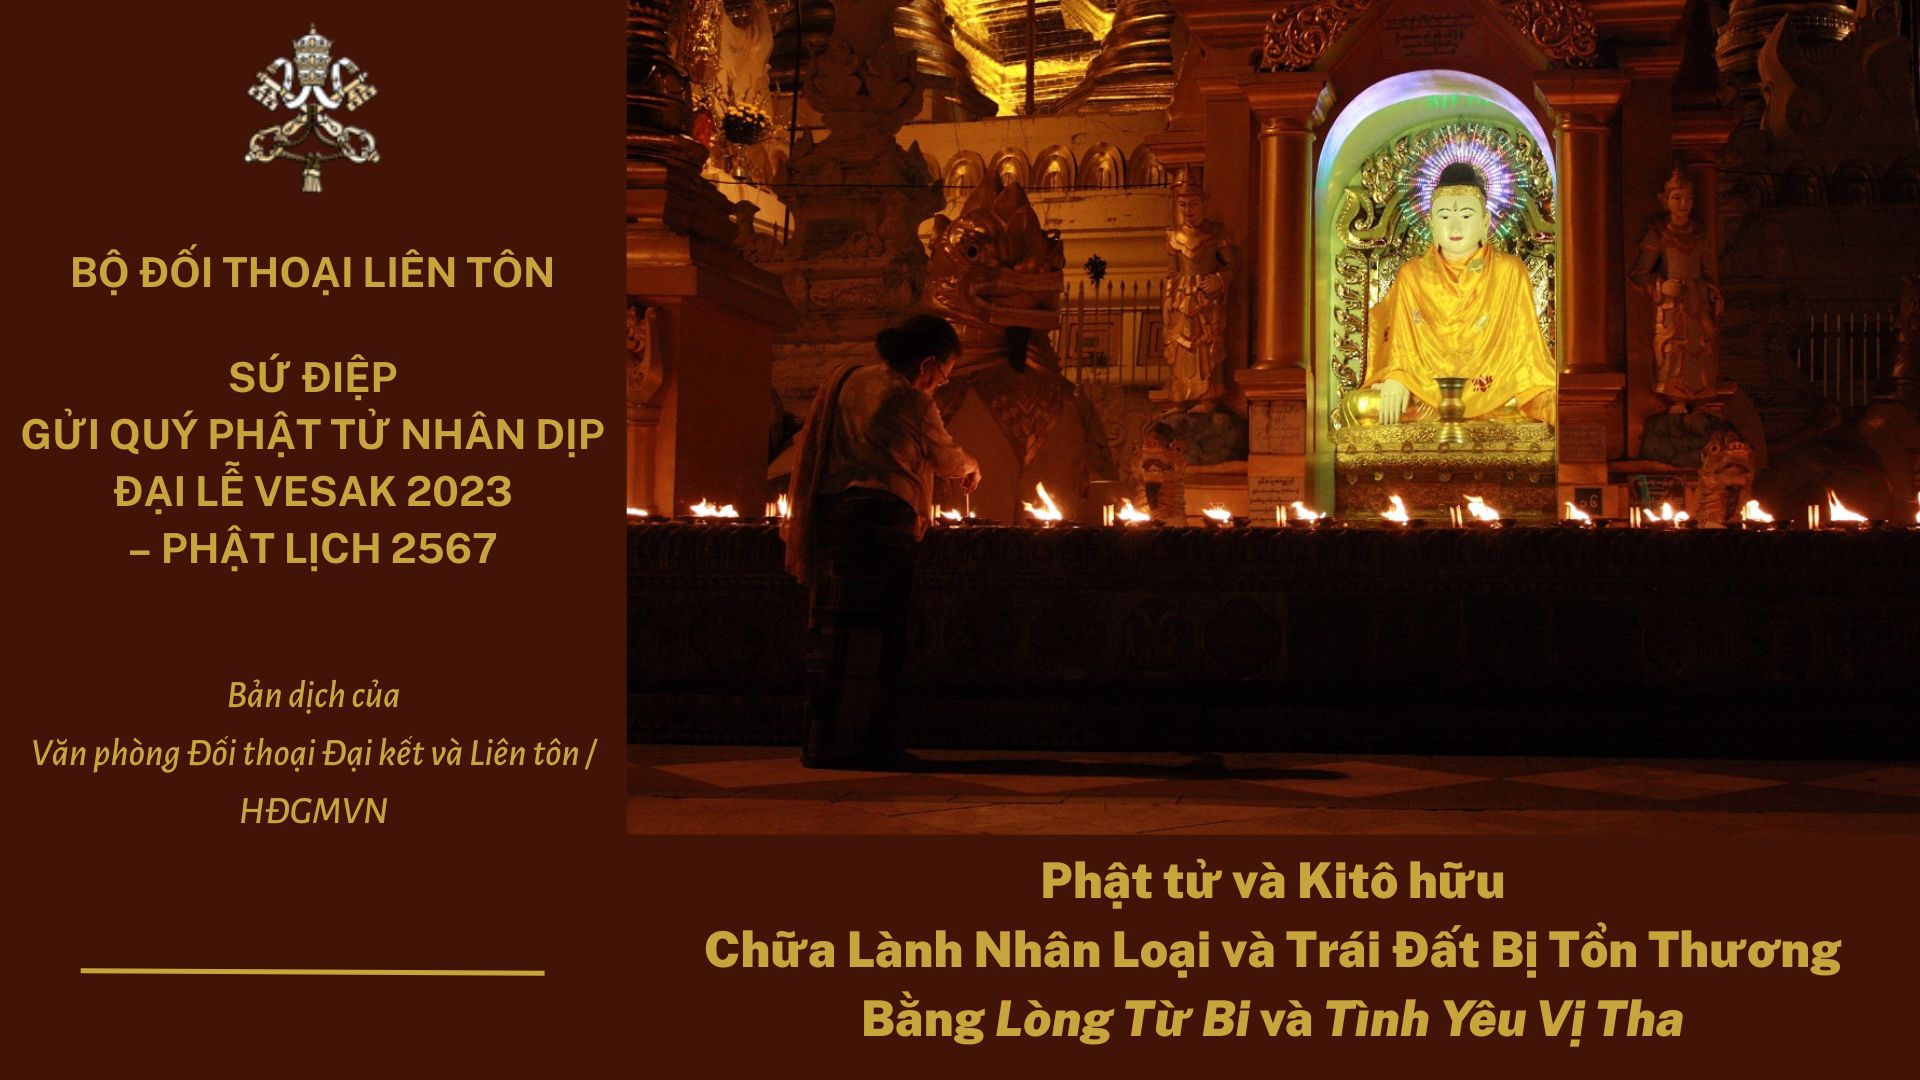 Sứ điệp gửi quý Phật tử nhân dịp Đại lễ Vesak 2023 – Phật lịch 2567: Lòng Từ Bi và Tình Yêu Vị Tha